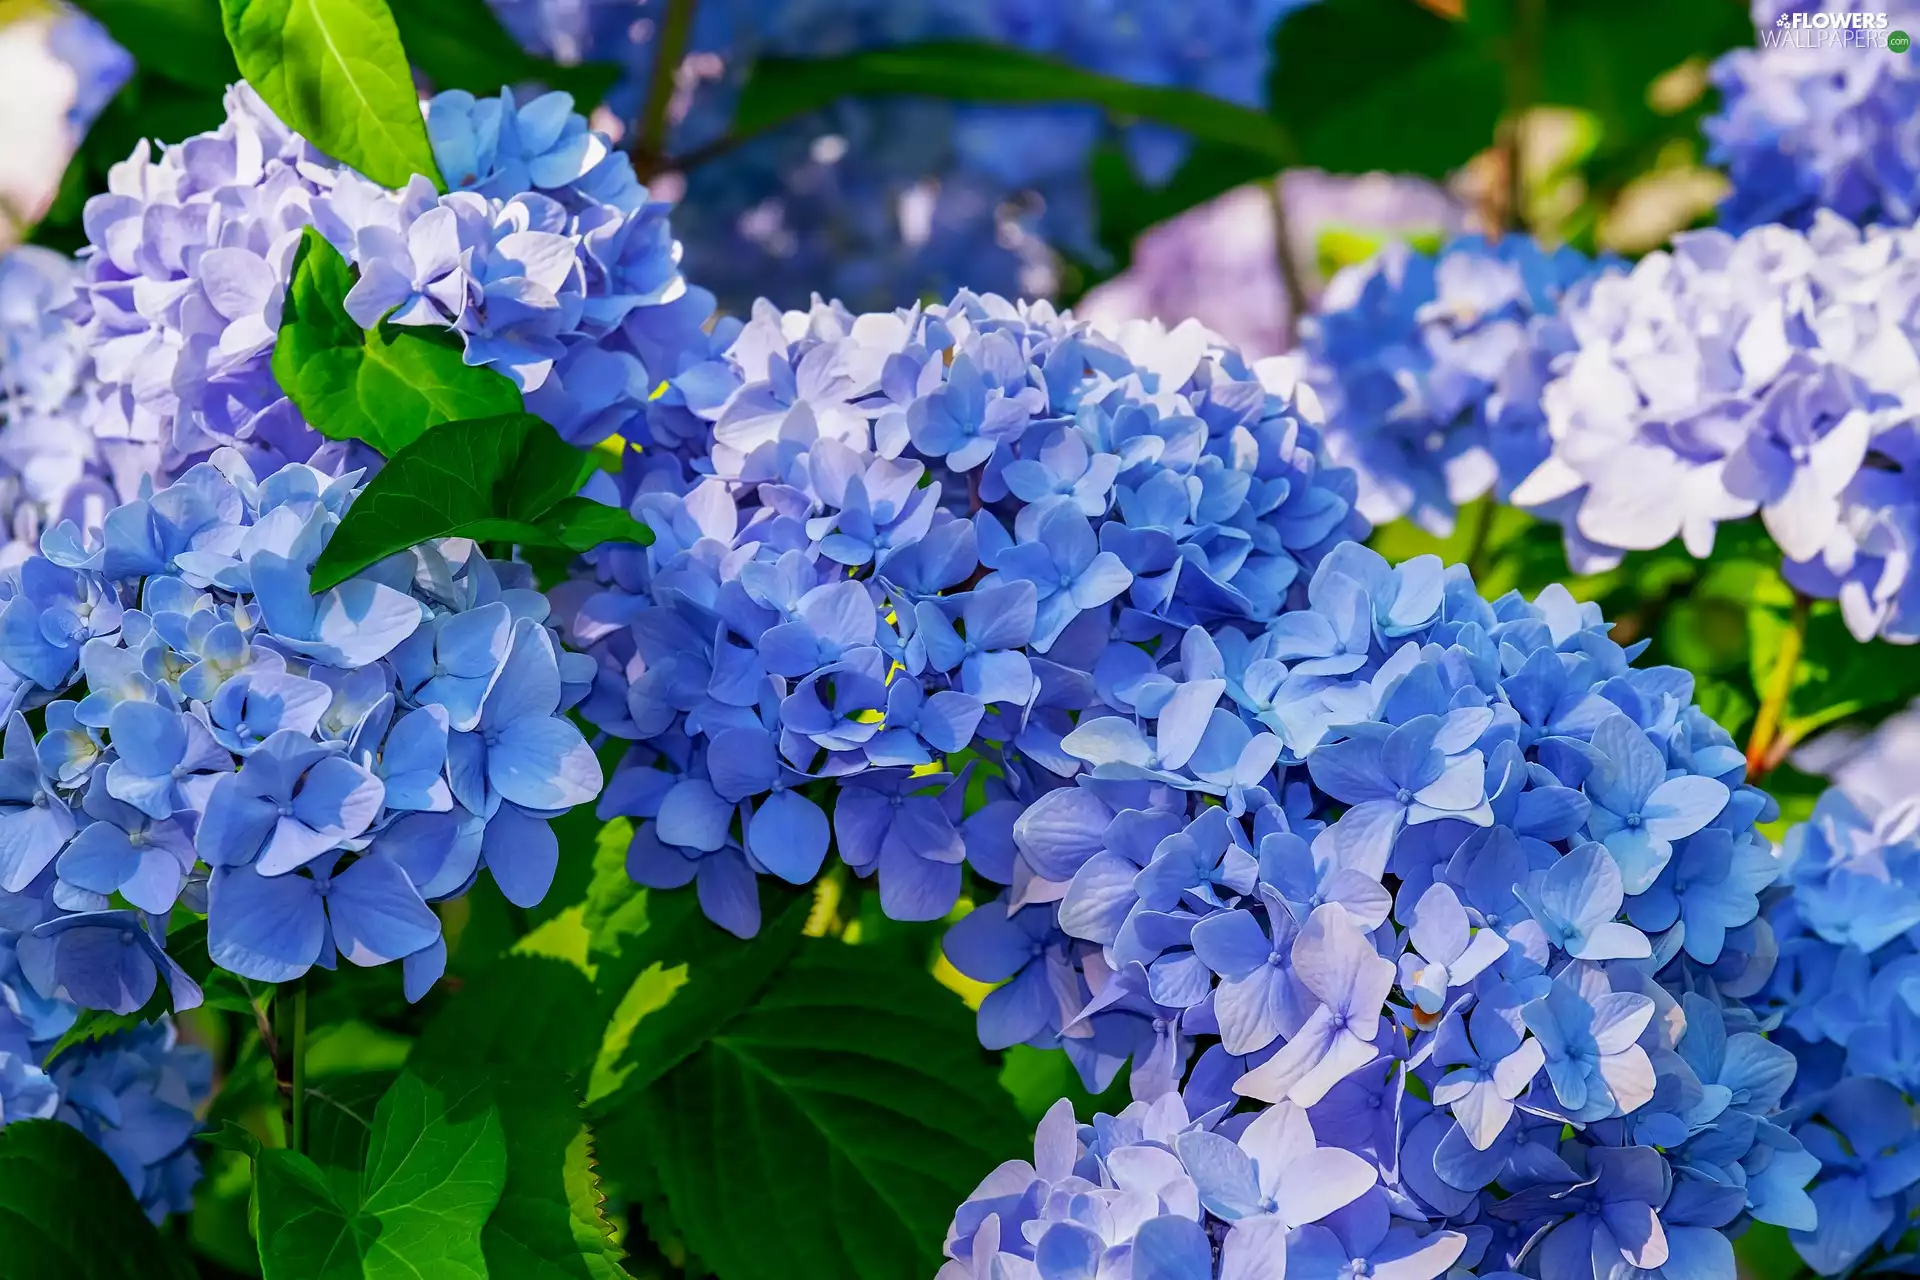 hydrangeas, Flowers, Blue